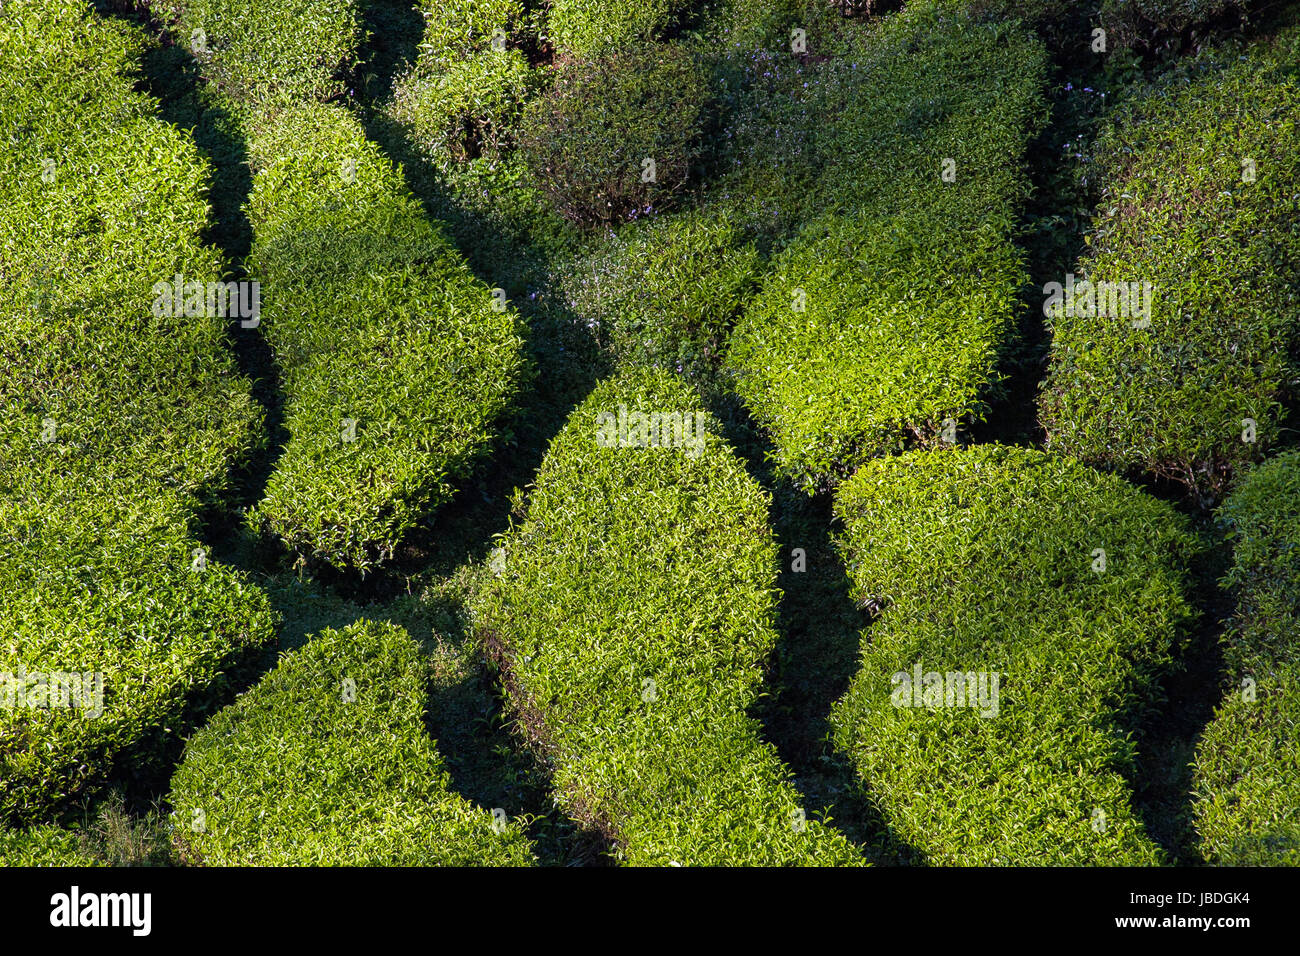 CAMERON Highlands, Malaisie ASIE - Mars 27, 2010 : Vue de dessus des rangées de plants de thé dans une plantation. Banque D'Images